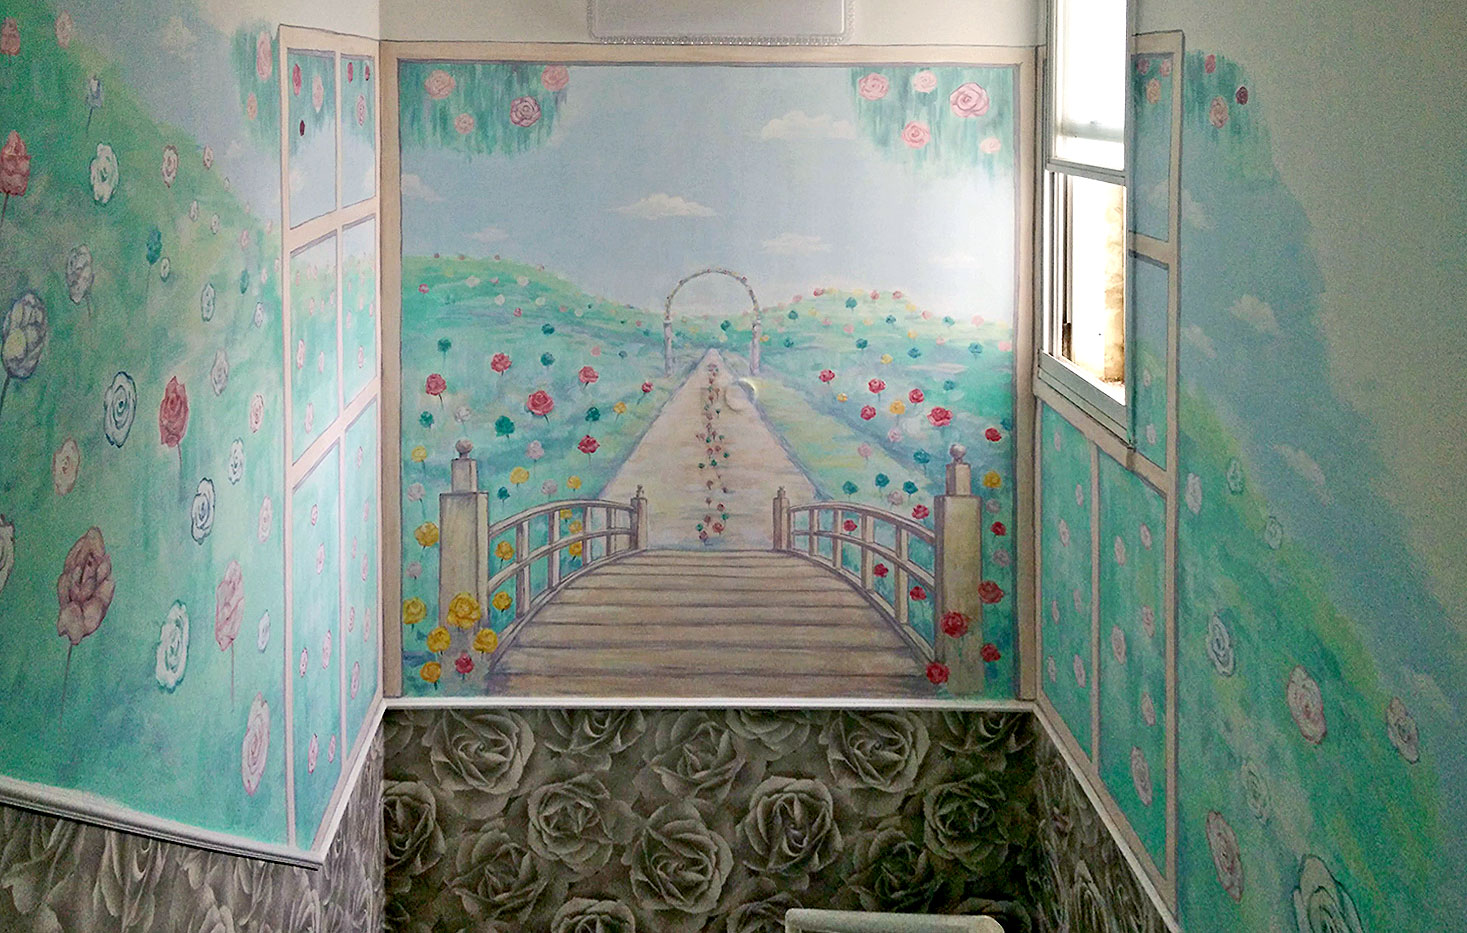 ציורי קיר של נוף עם ורדים בחדר מדרגות של בית הפרטי